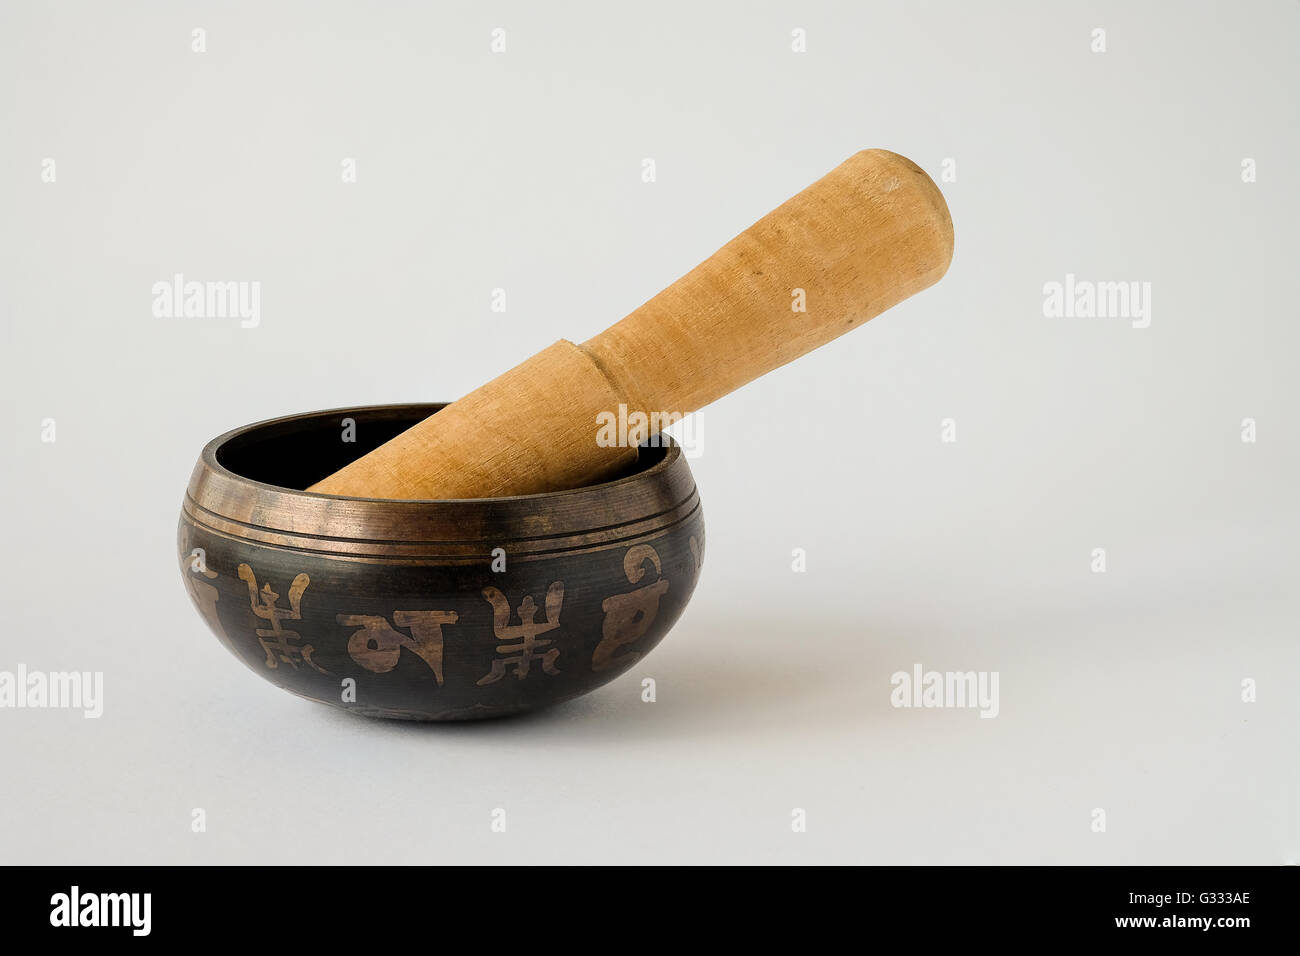 Bronzo decorativo Tibetan Singing Bowl con un mazzuolo di legno. Ogni secondo simbolo è un carattere tibetano che compongono il mantra "om Foto Stock